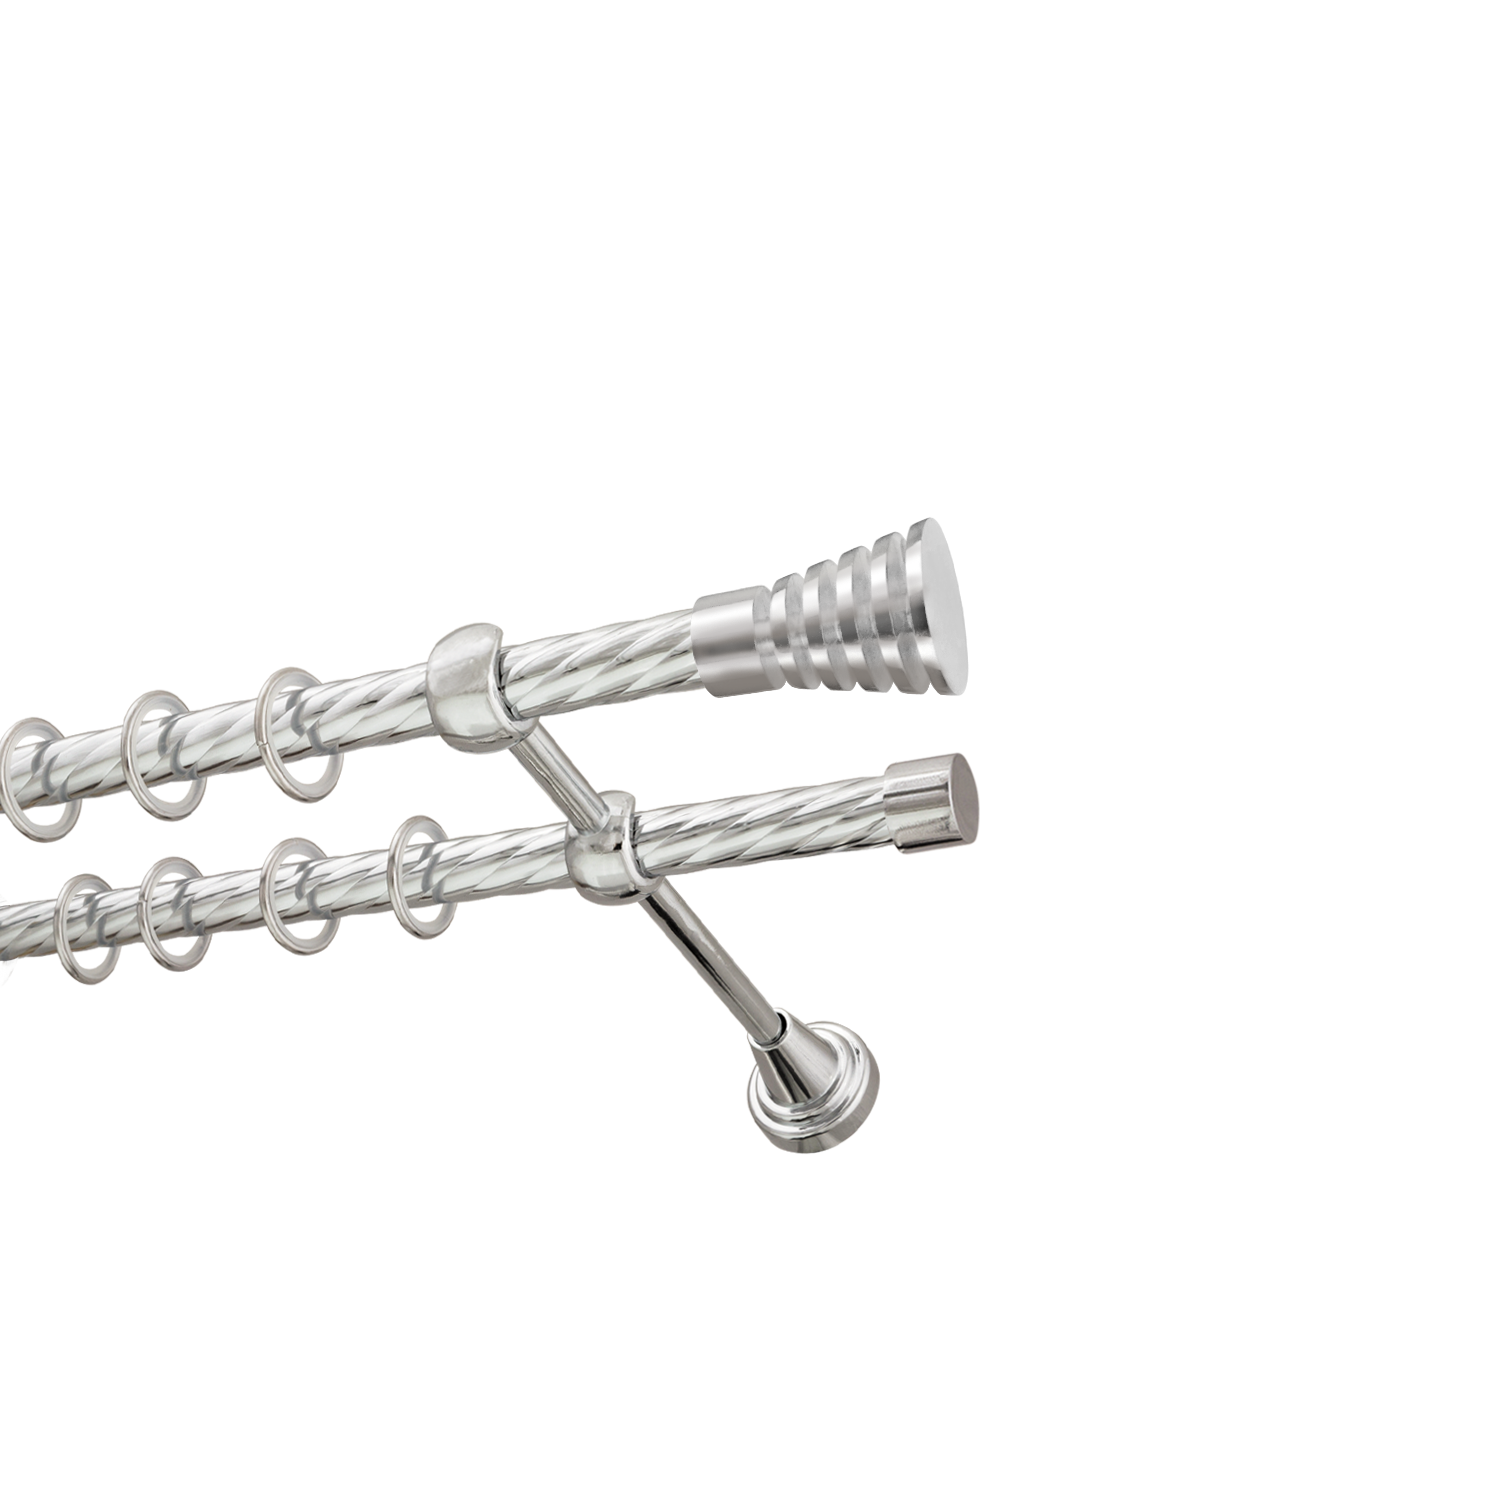 Металлический карниз для штор Верона, двухрядный 16/16 мм, серебро, витая штанга, длина 160 см - фото Wikidecor.ru